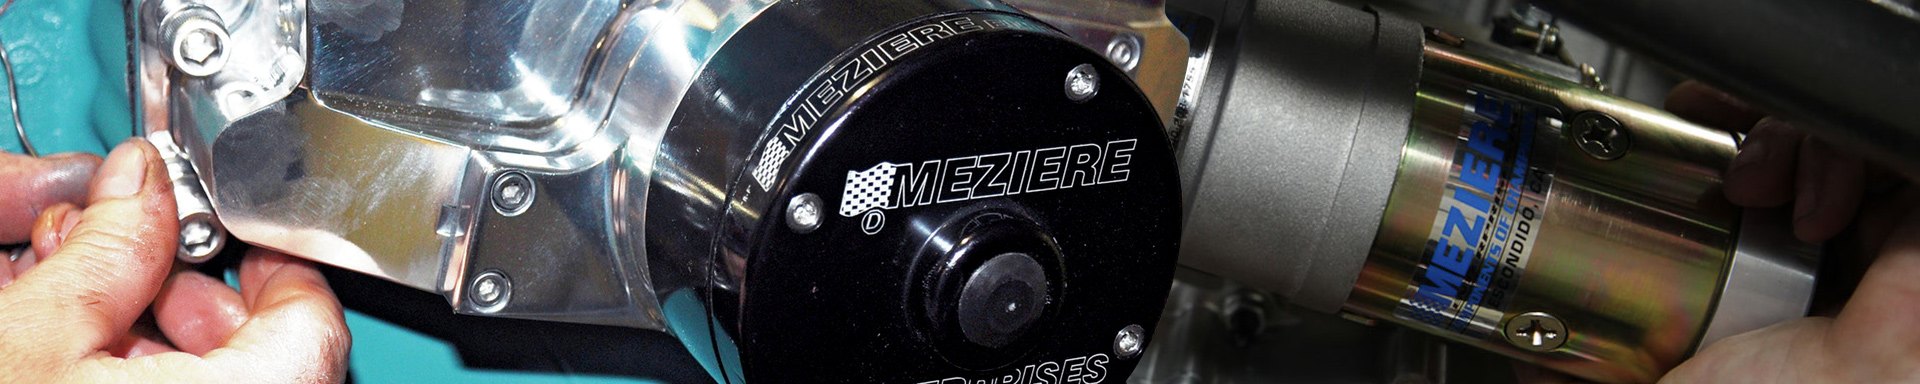 Meziere Enterprises Engine Service Tools